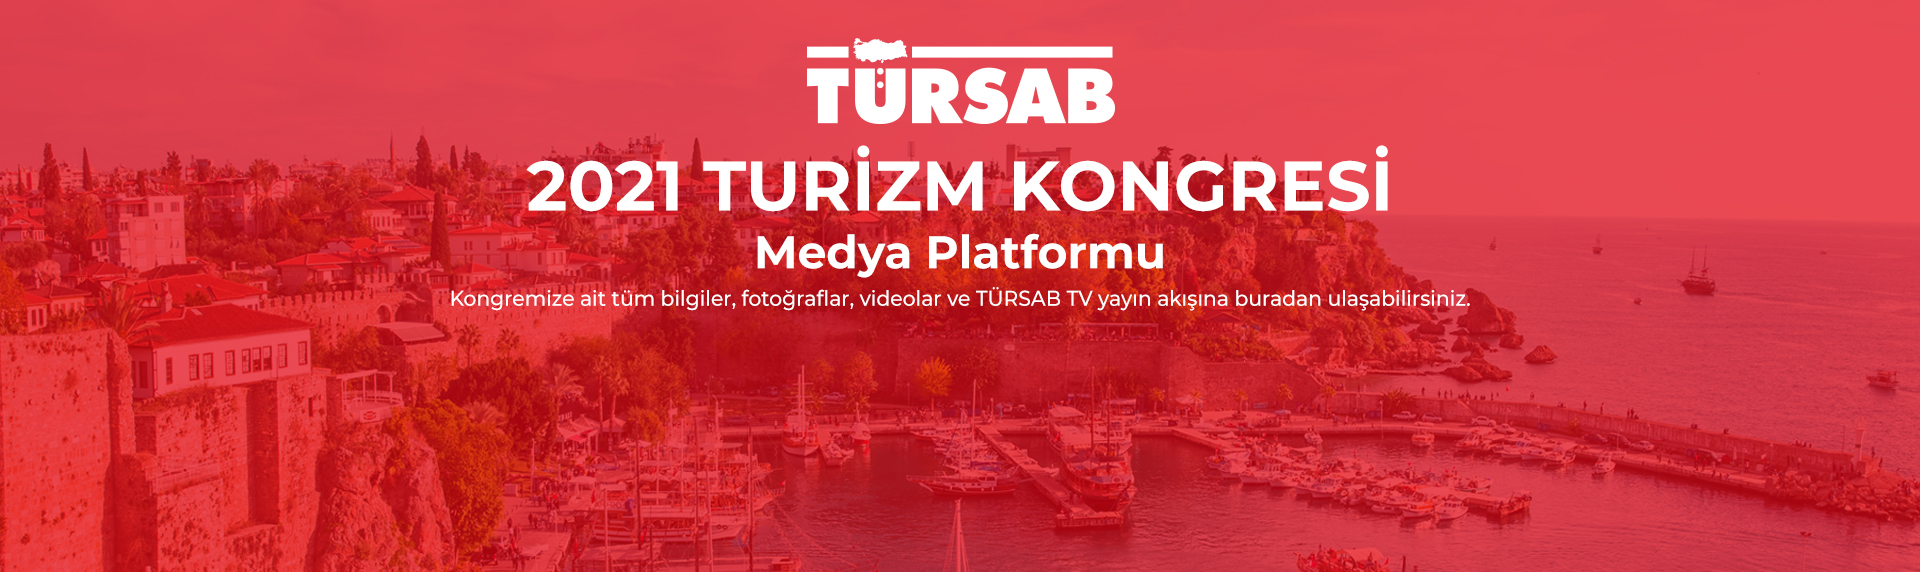 https://www.tursab.org.tr/duyurular/tursab-2021-turizm-kongresi-medya-platformu